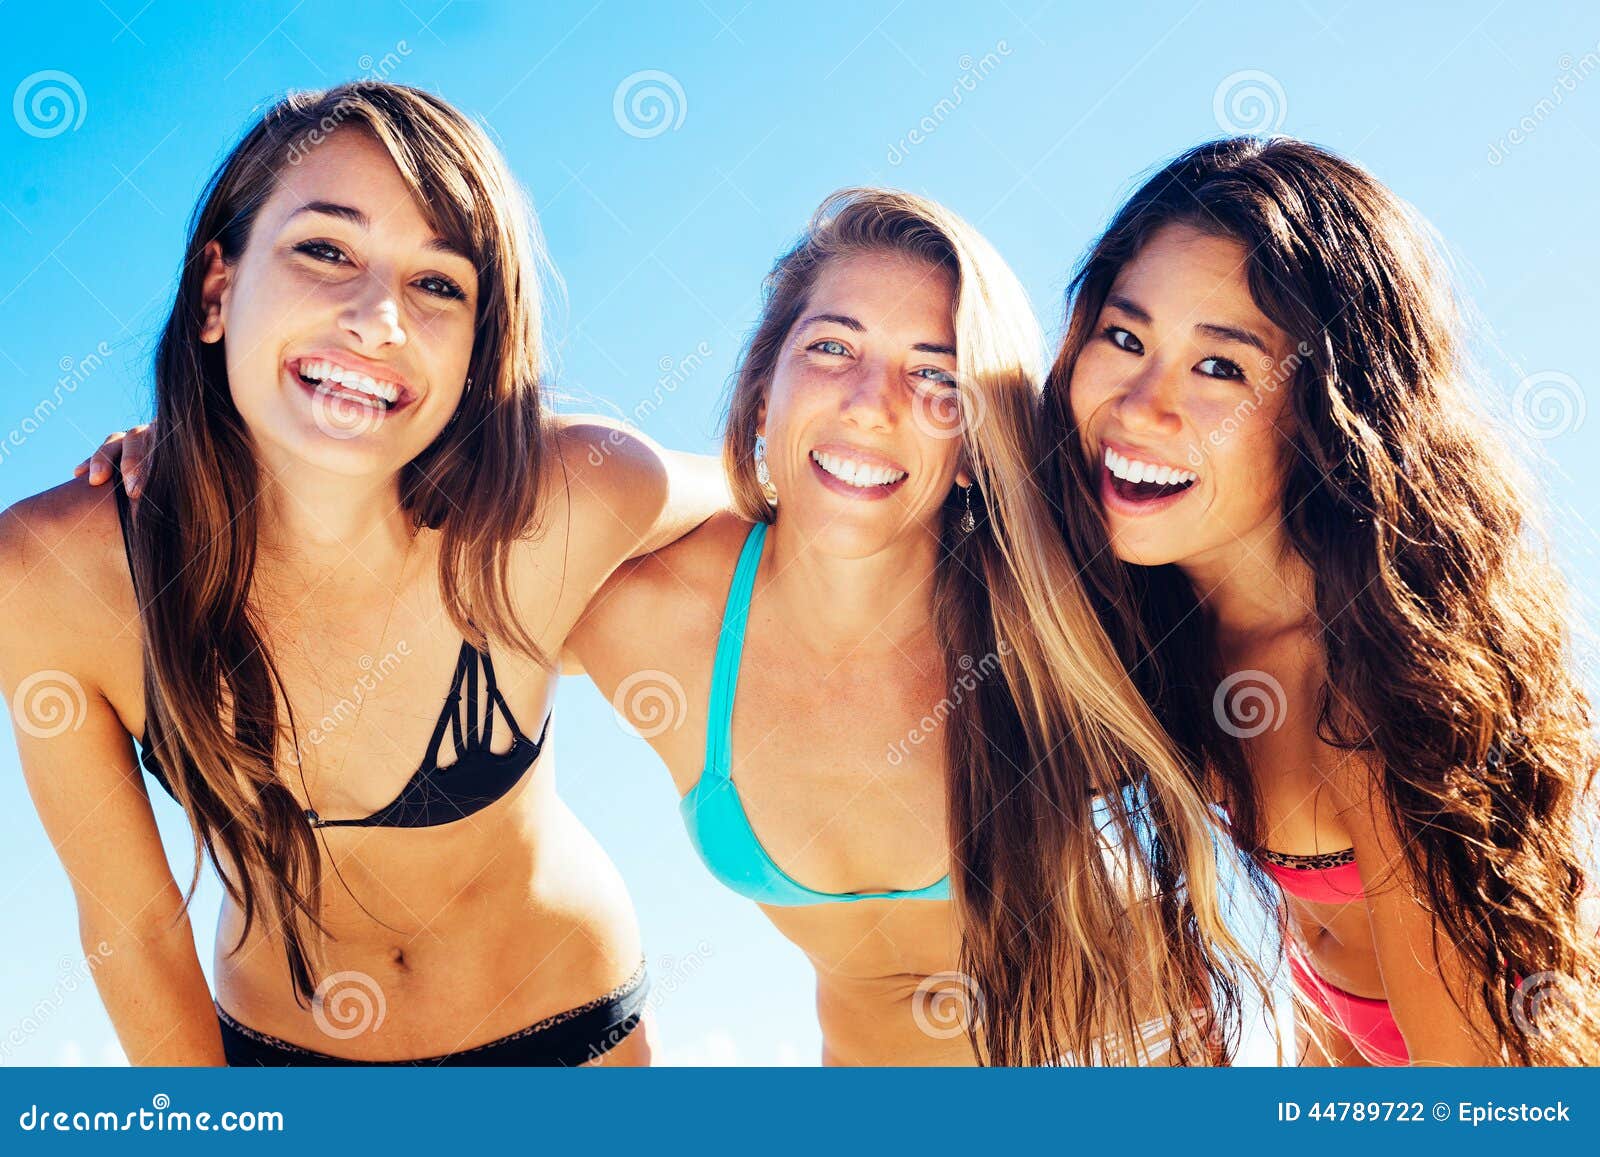 My Bikini Hot Free Pics Of Girls In Bikini 3